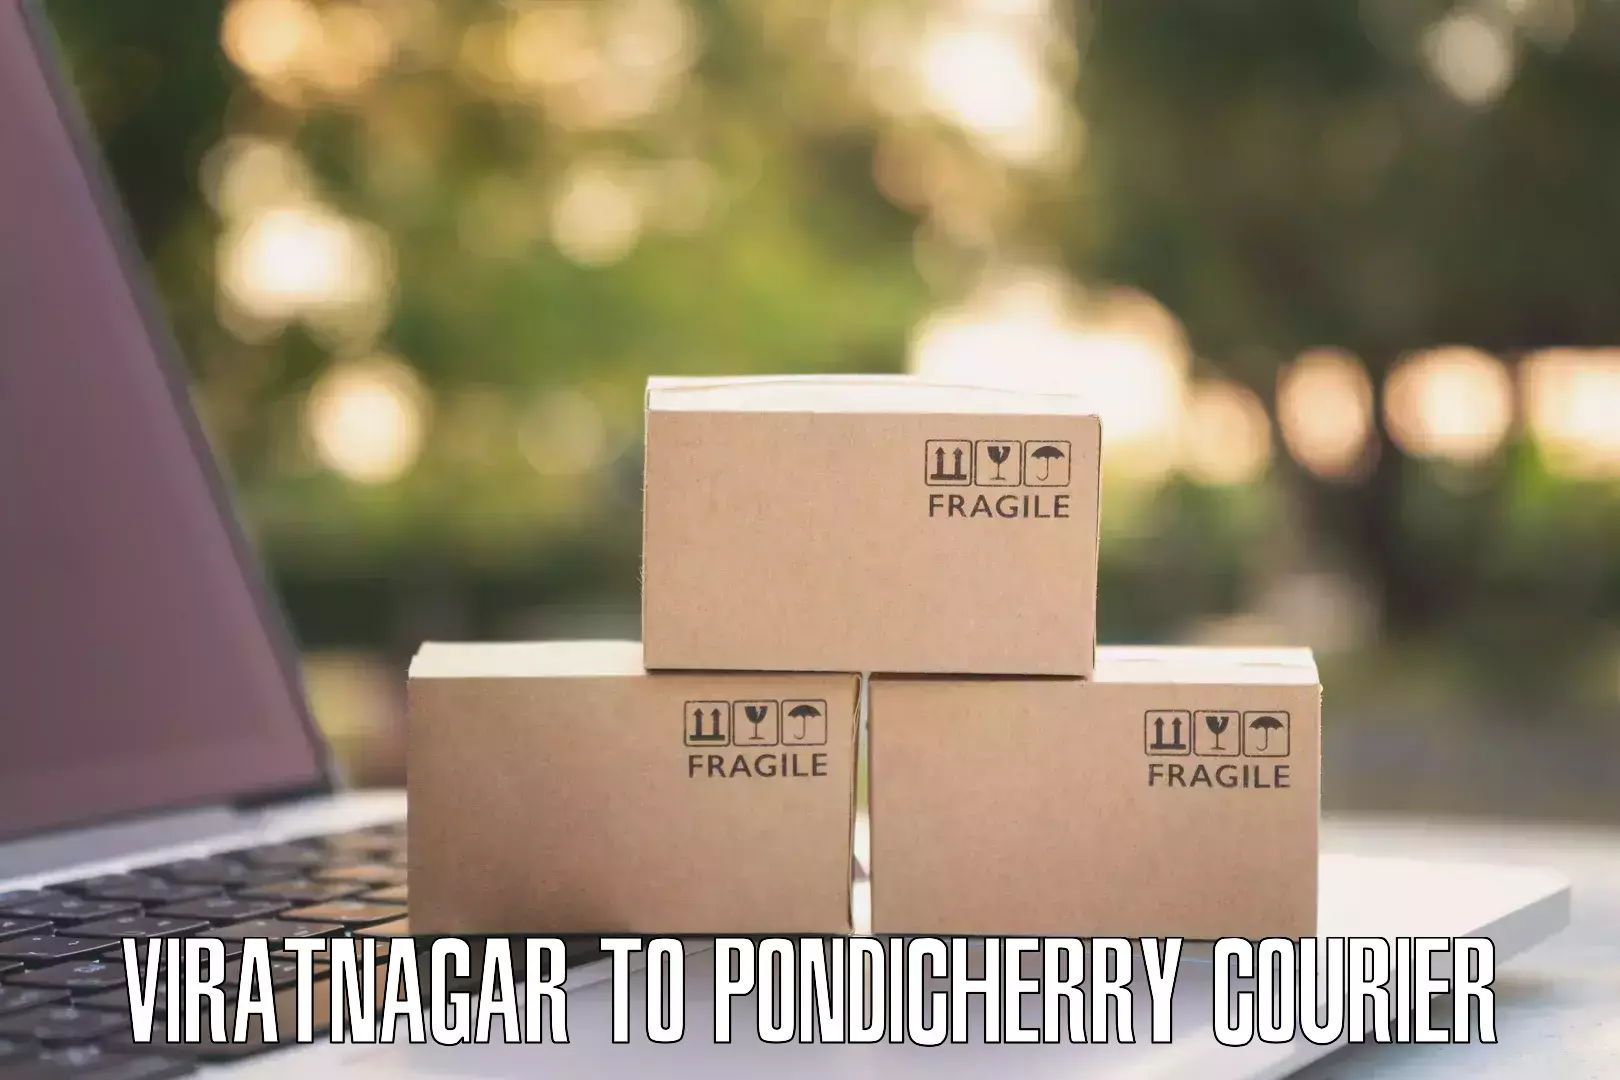 Specialized shipment handling Viratnagar to Pondicherry